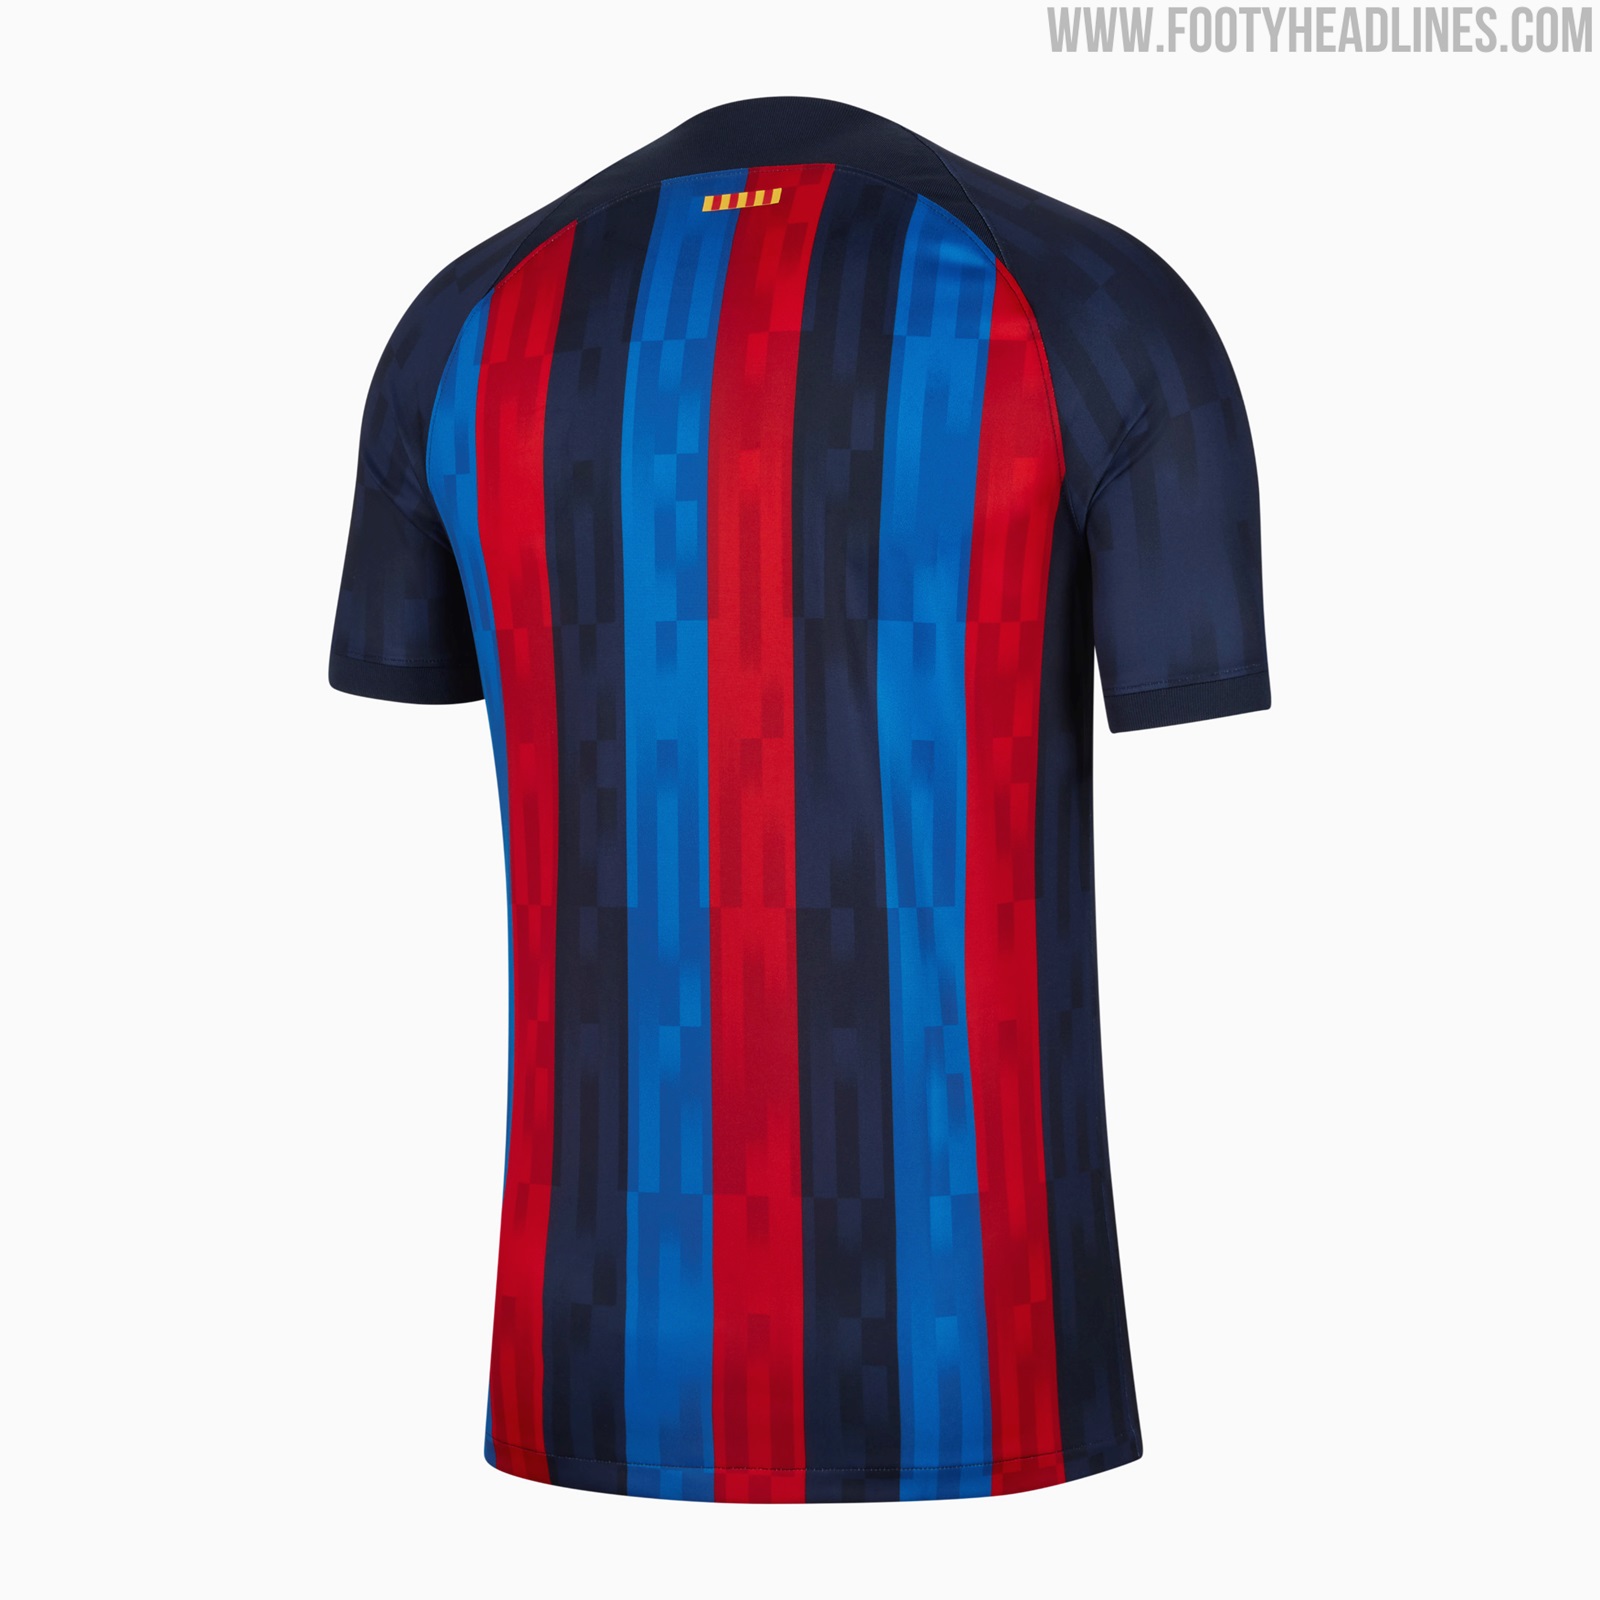 Inspireren handtekening afstuderen FC Barcelona 22-23 Home Kit Released - Footy Headlines